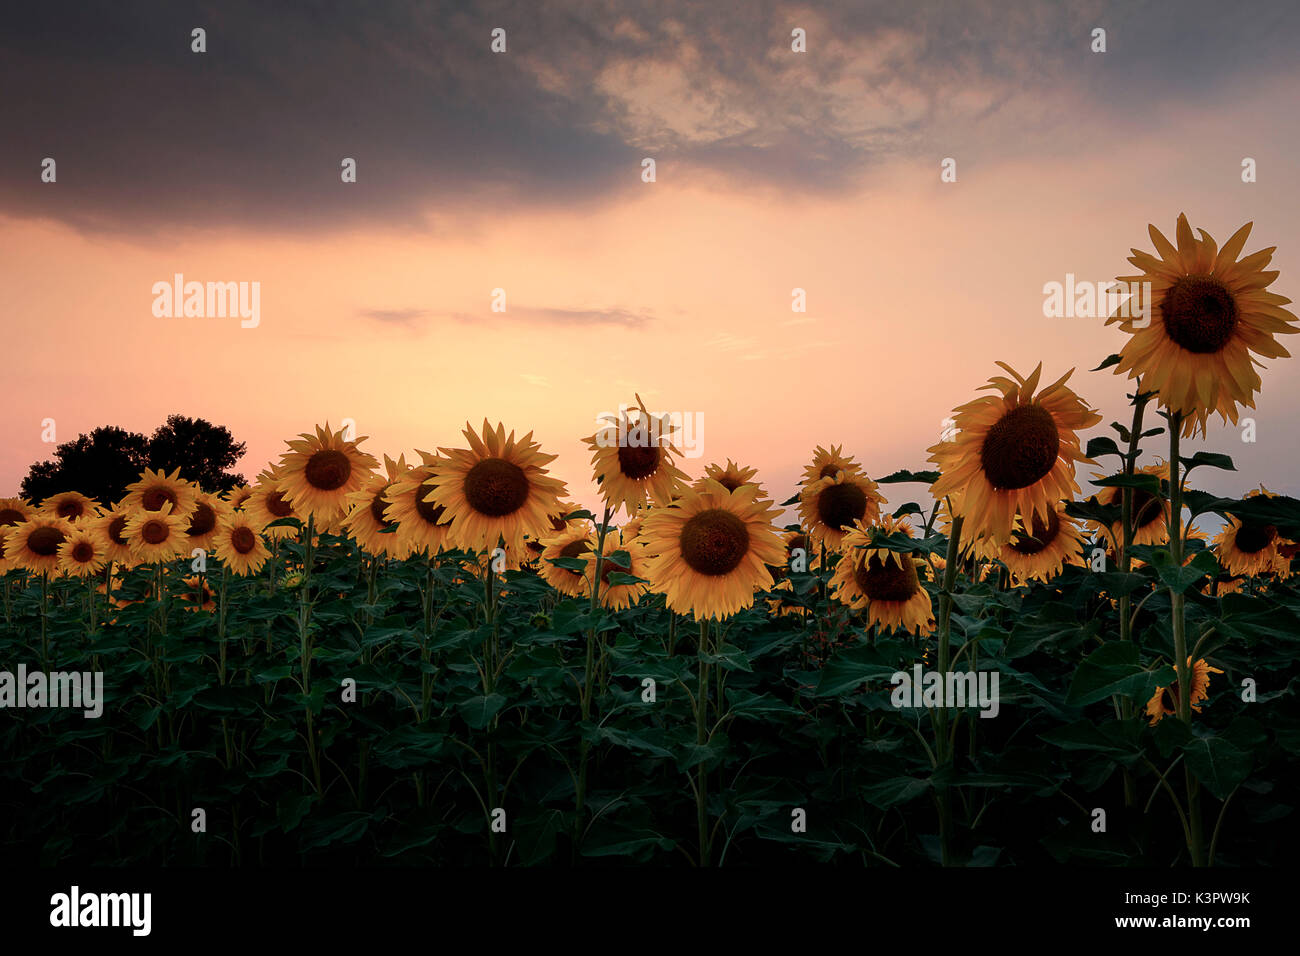 Sunflowers at sunset,Piacenza, Emilia Romagna, Italy Stock Photo